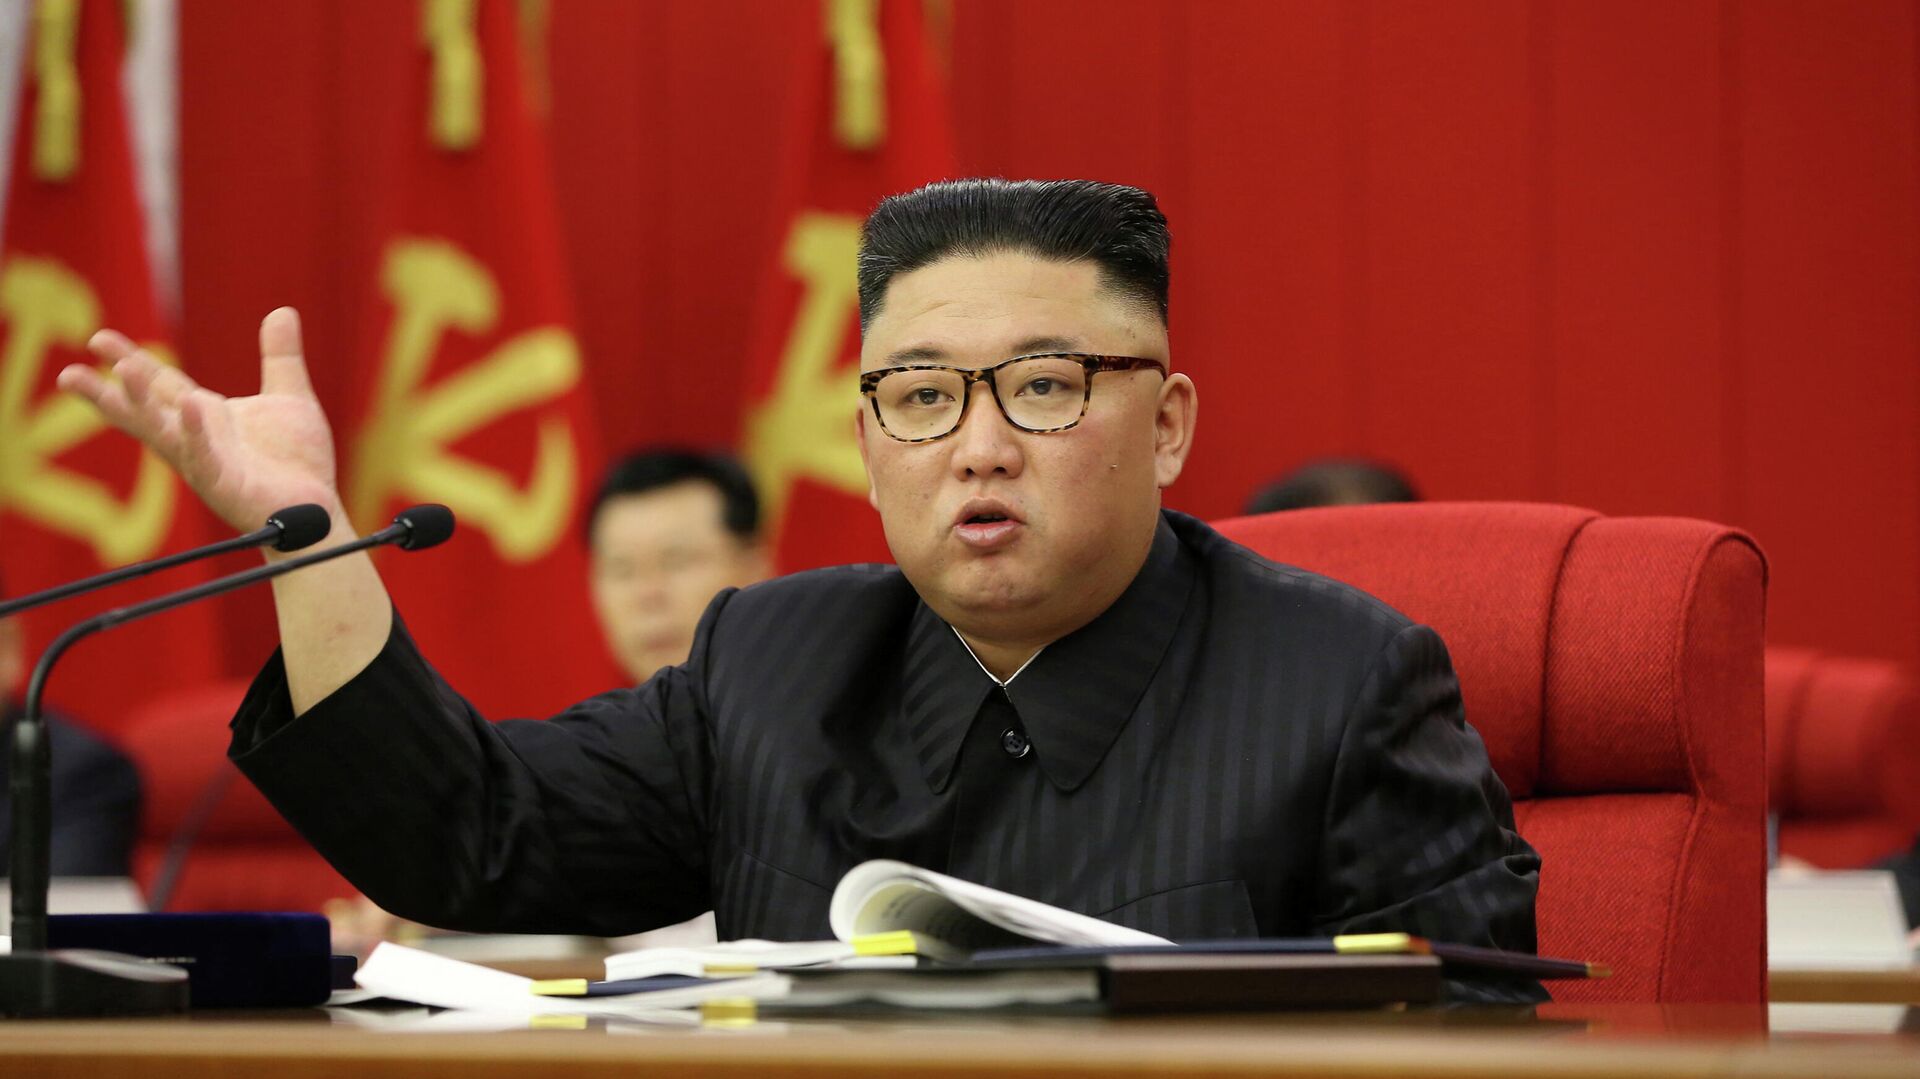 Лидер Северной Кореи Ким Чен Ын выступает на открытии 3-го пленарного заседания 8-го Центрального комитета Рабочей партии Кореи в Пхеньяне, Северная Корея - РИА Новости, 1920, 30.06.2021